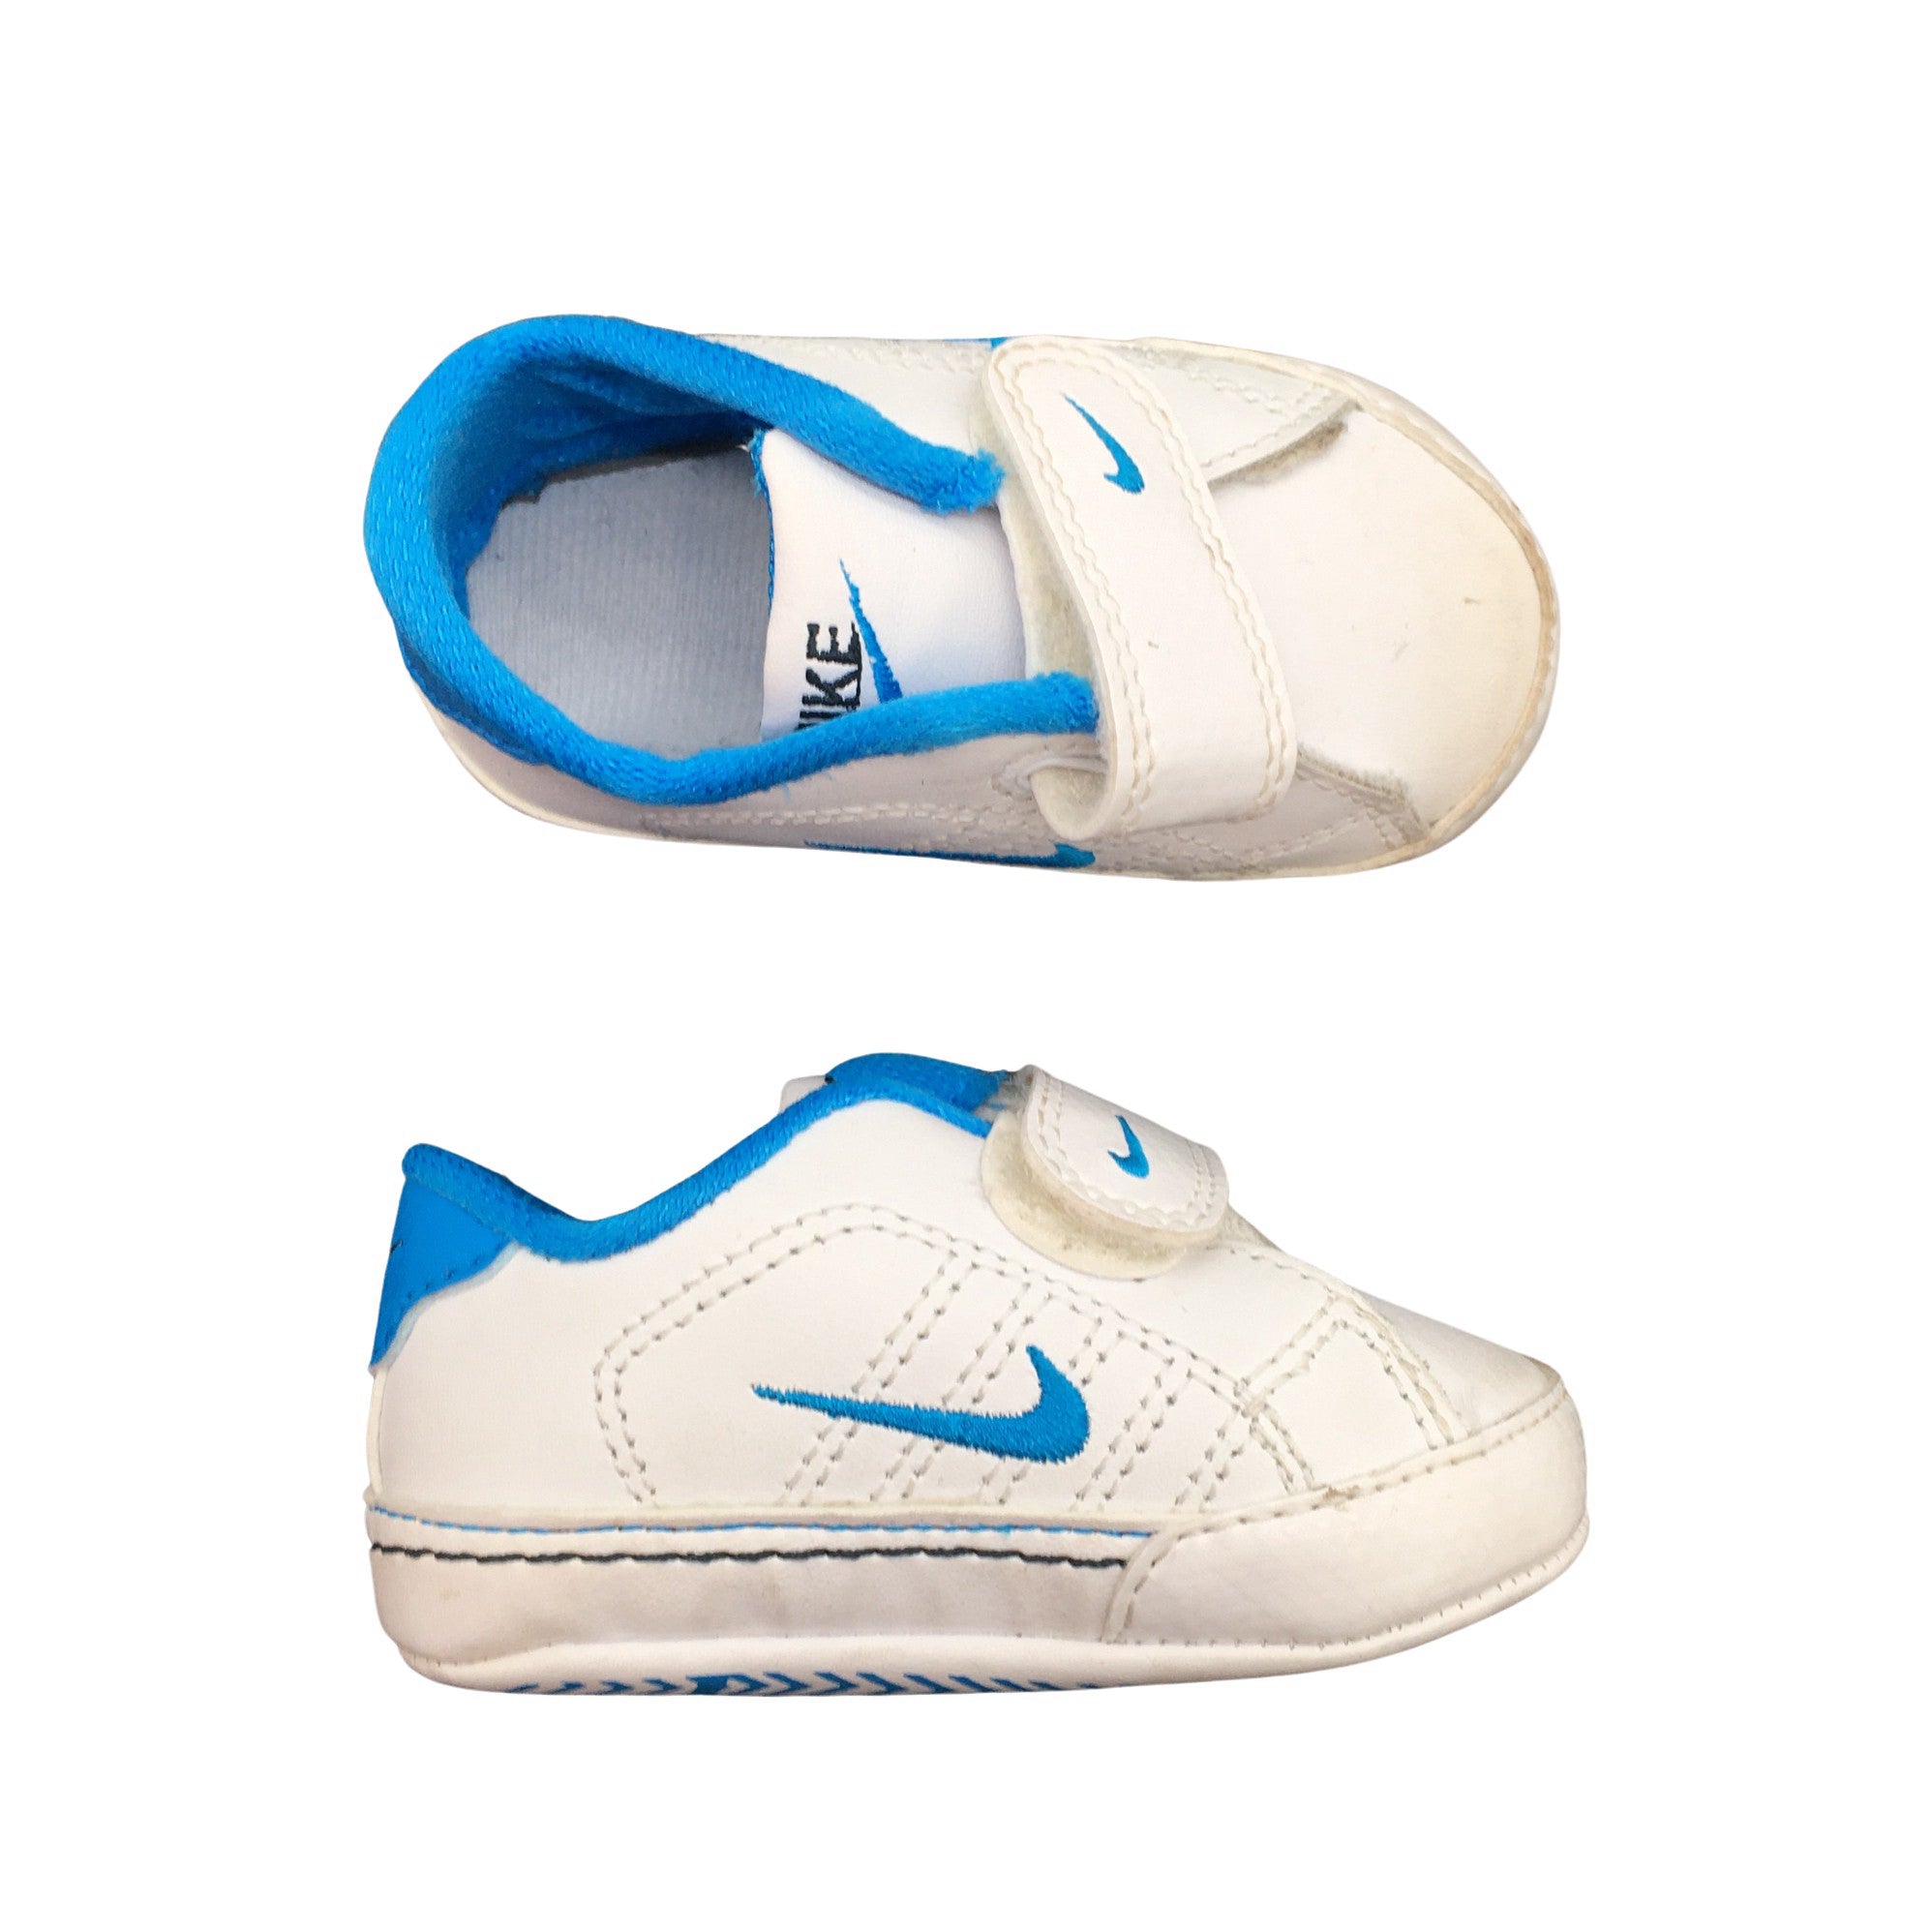 Unisex Baby shoes, size 17 (White) |